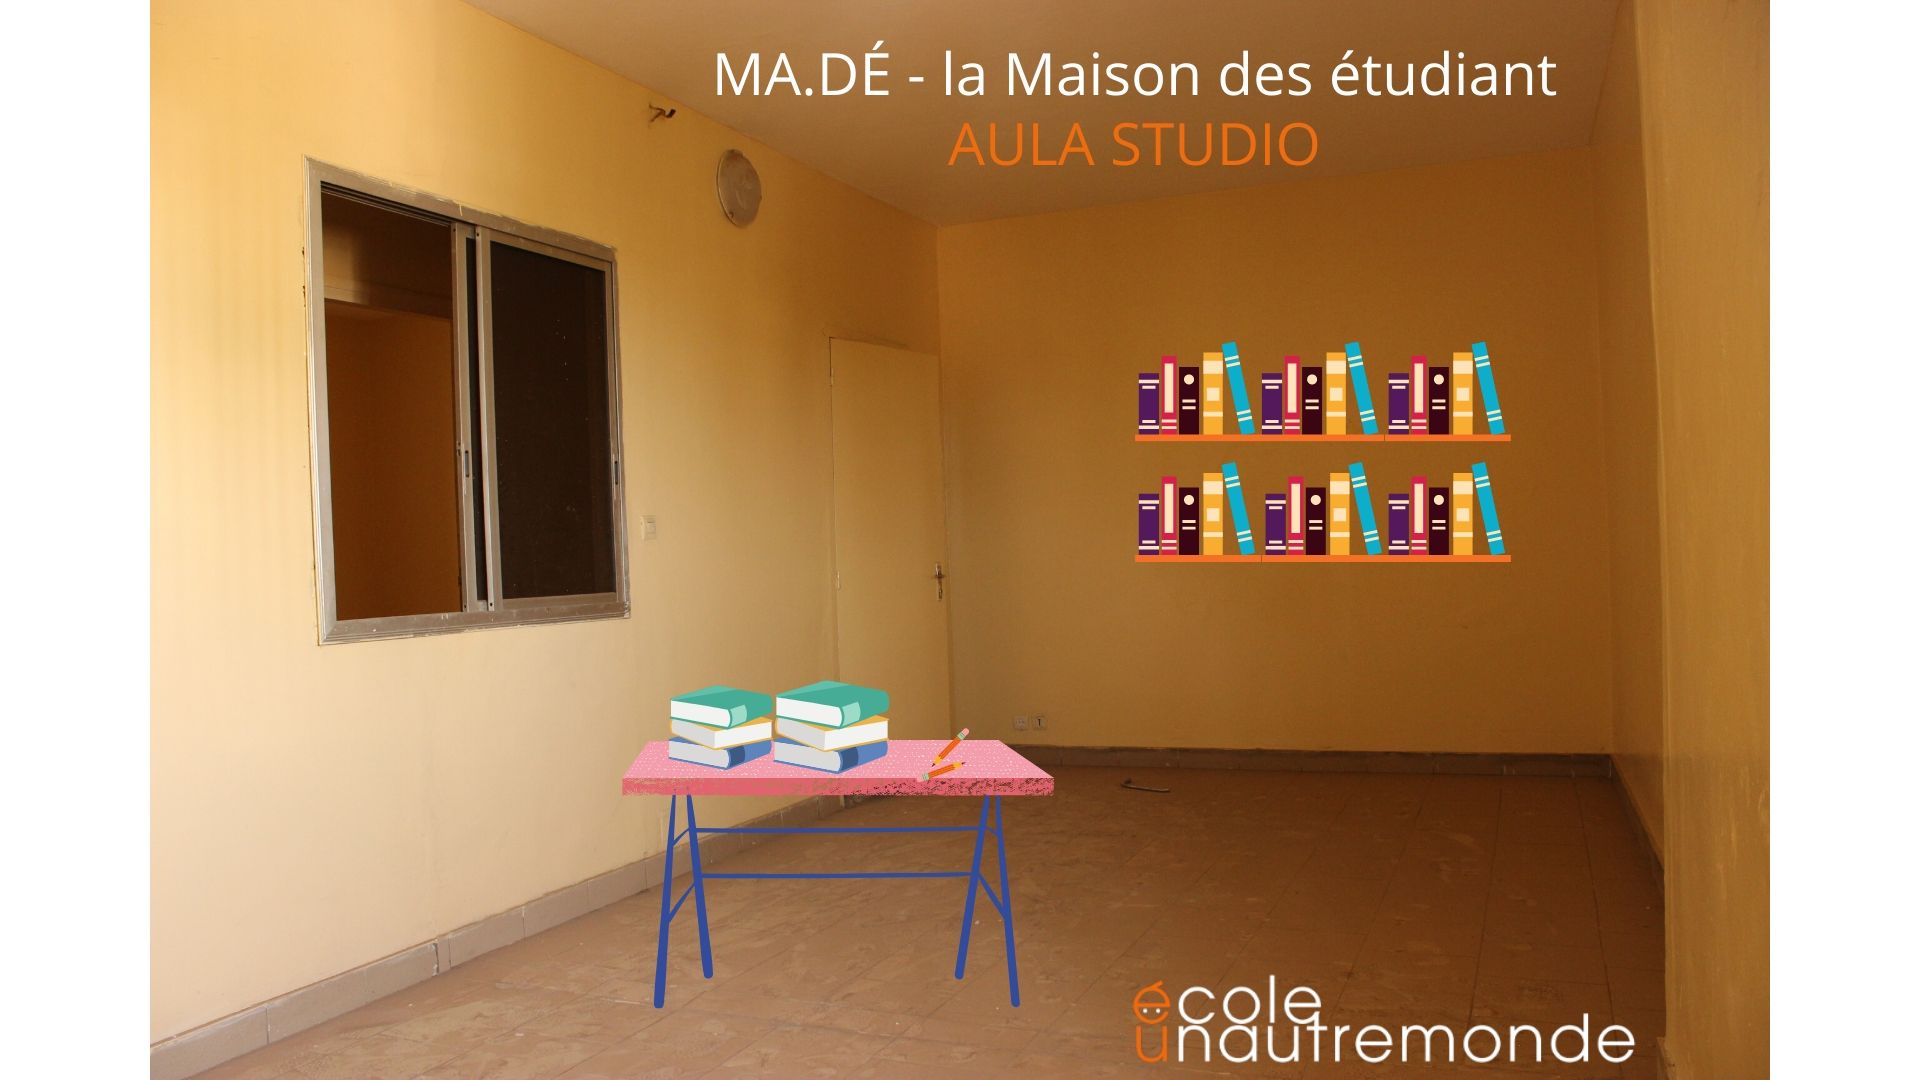 Libri per la Maison des étudiant a Dakar-Fabbrica Utopie